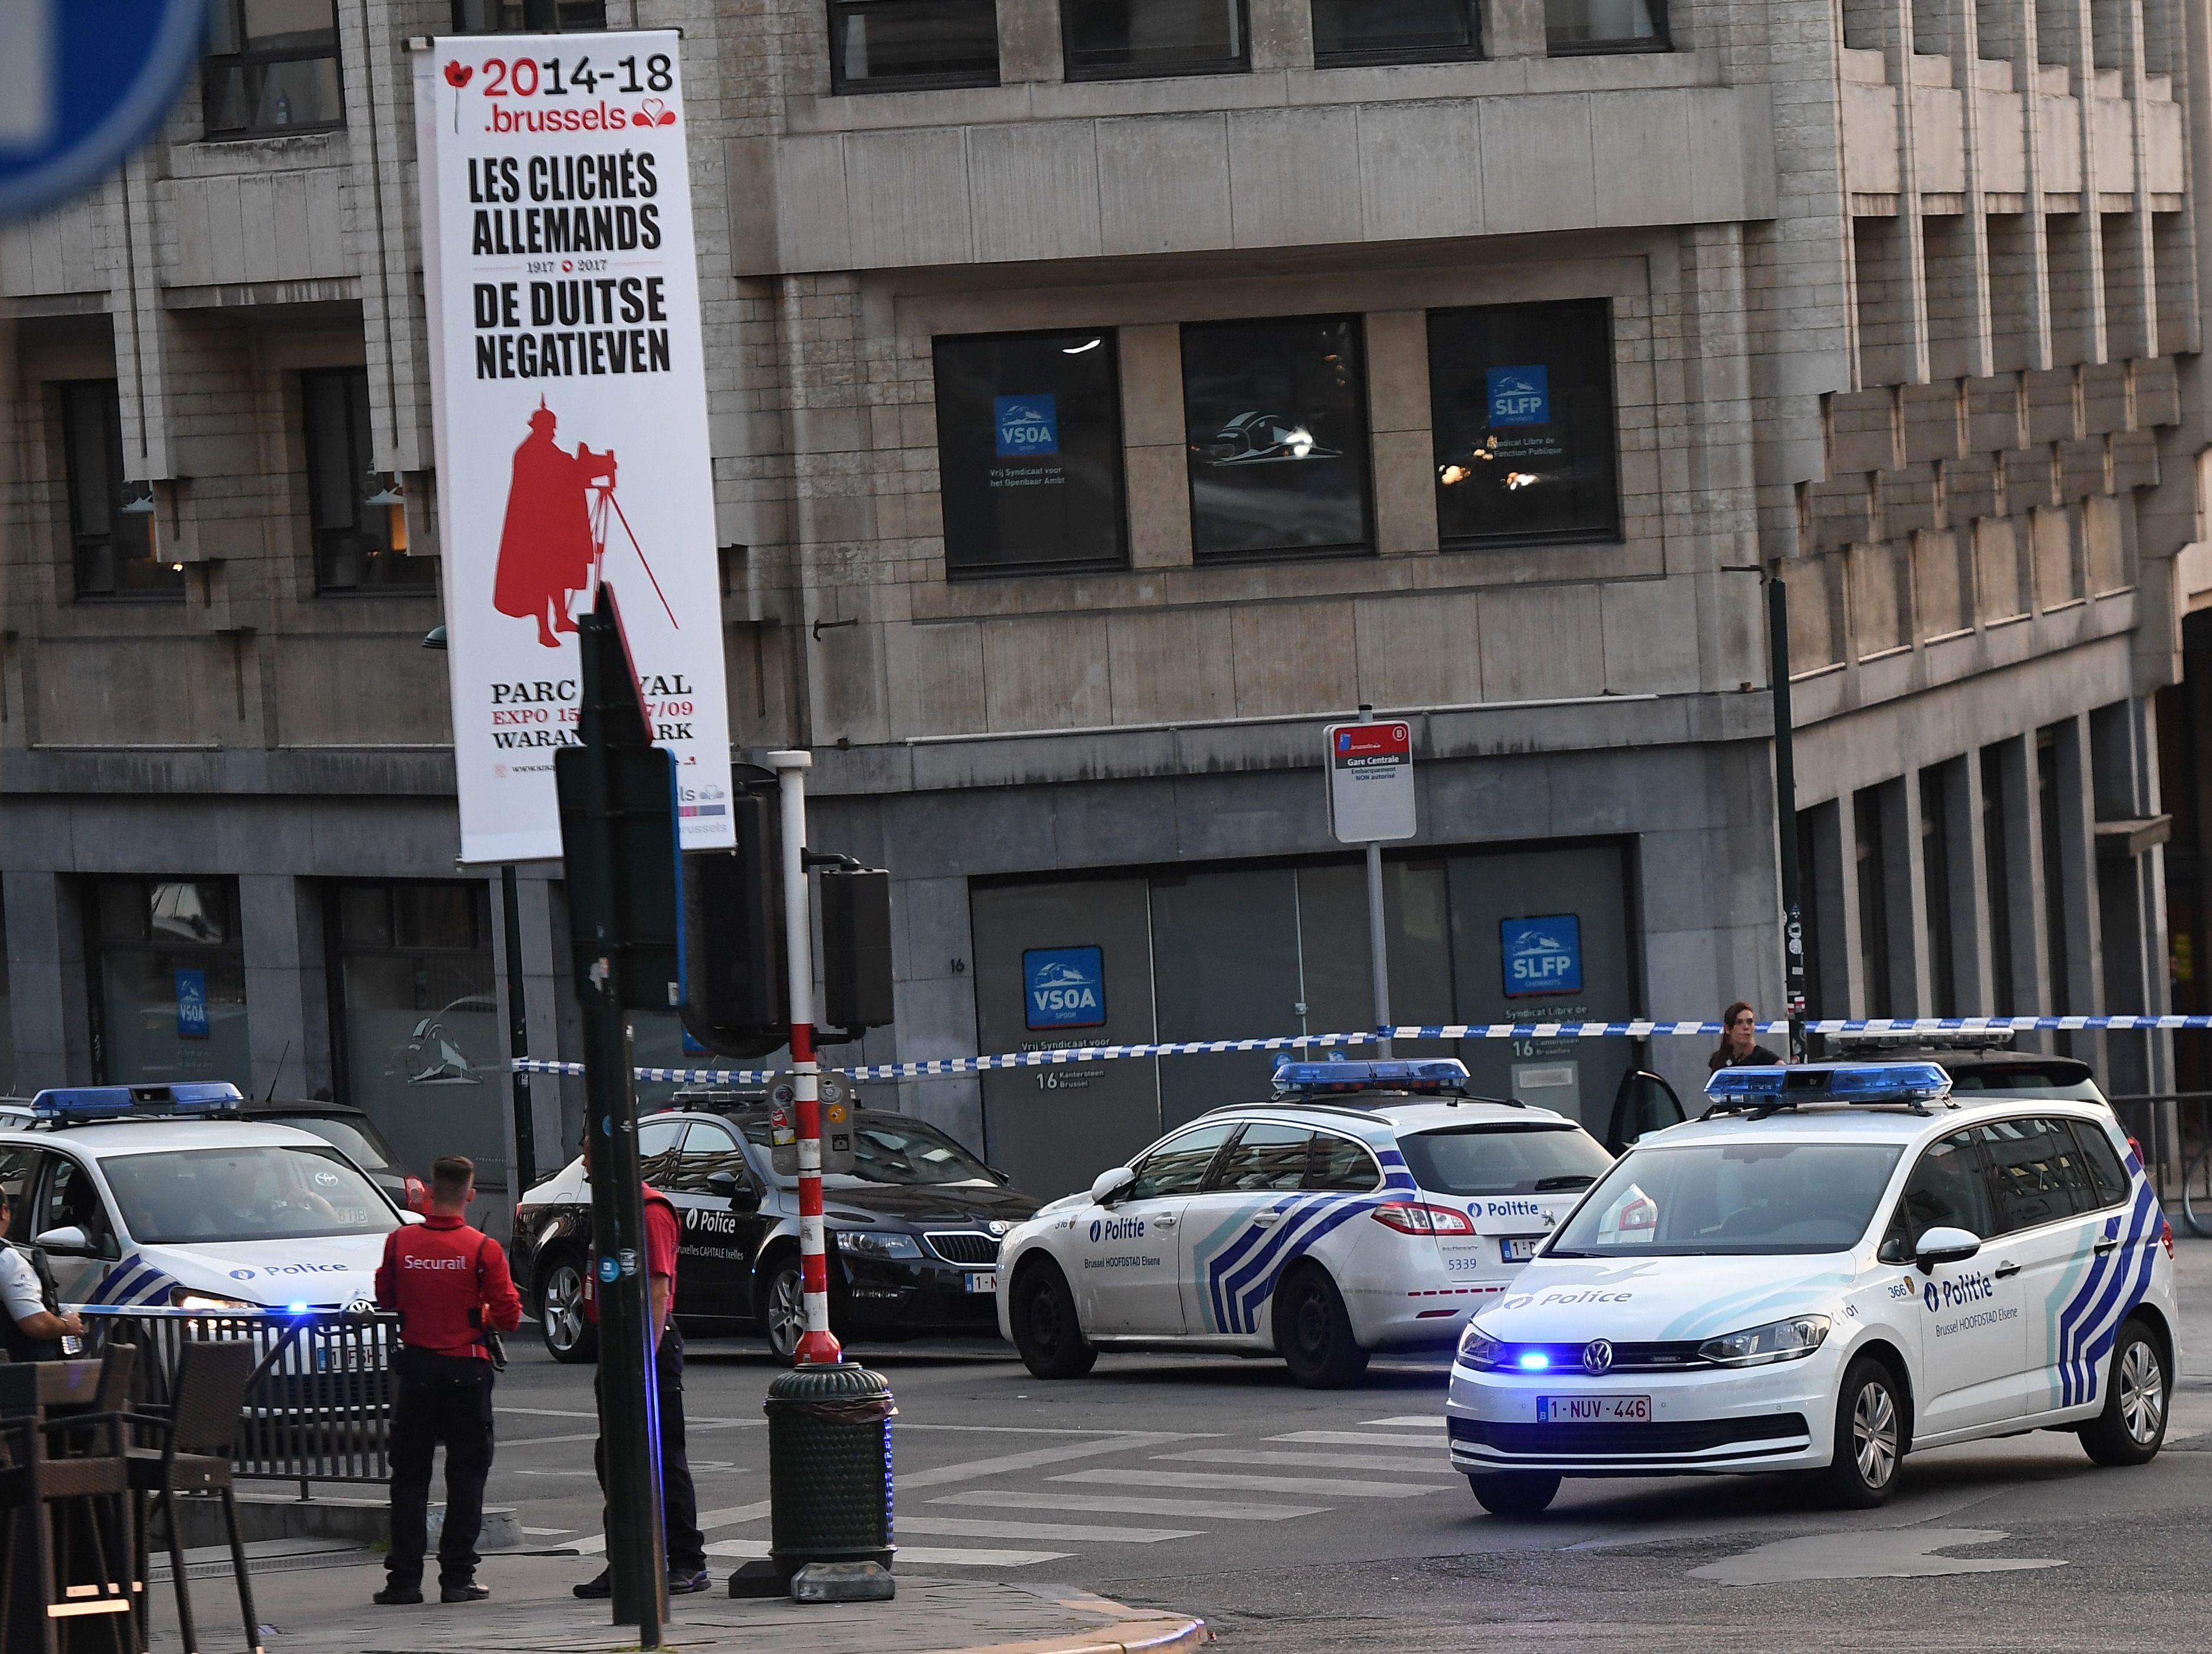 وصول الشرطة إلى موقع حادث بروكسل